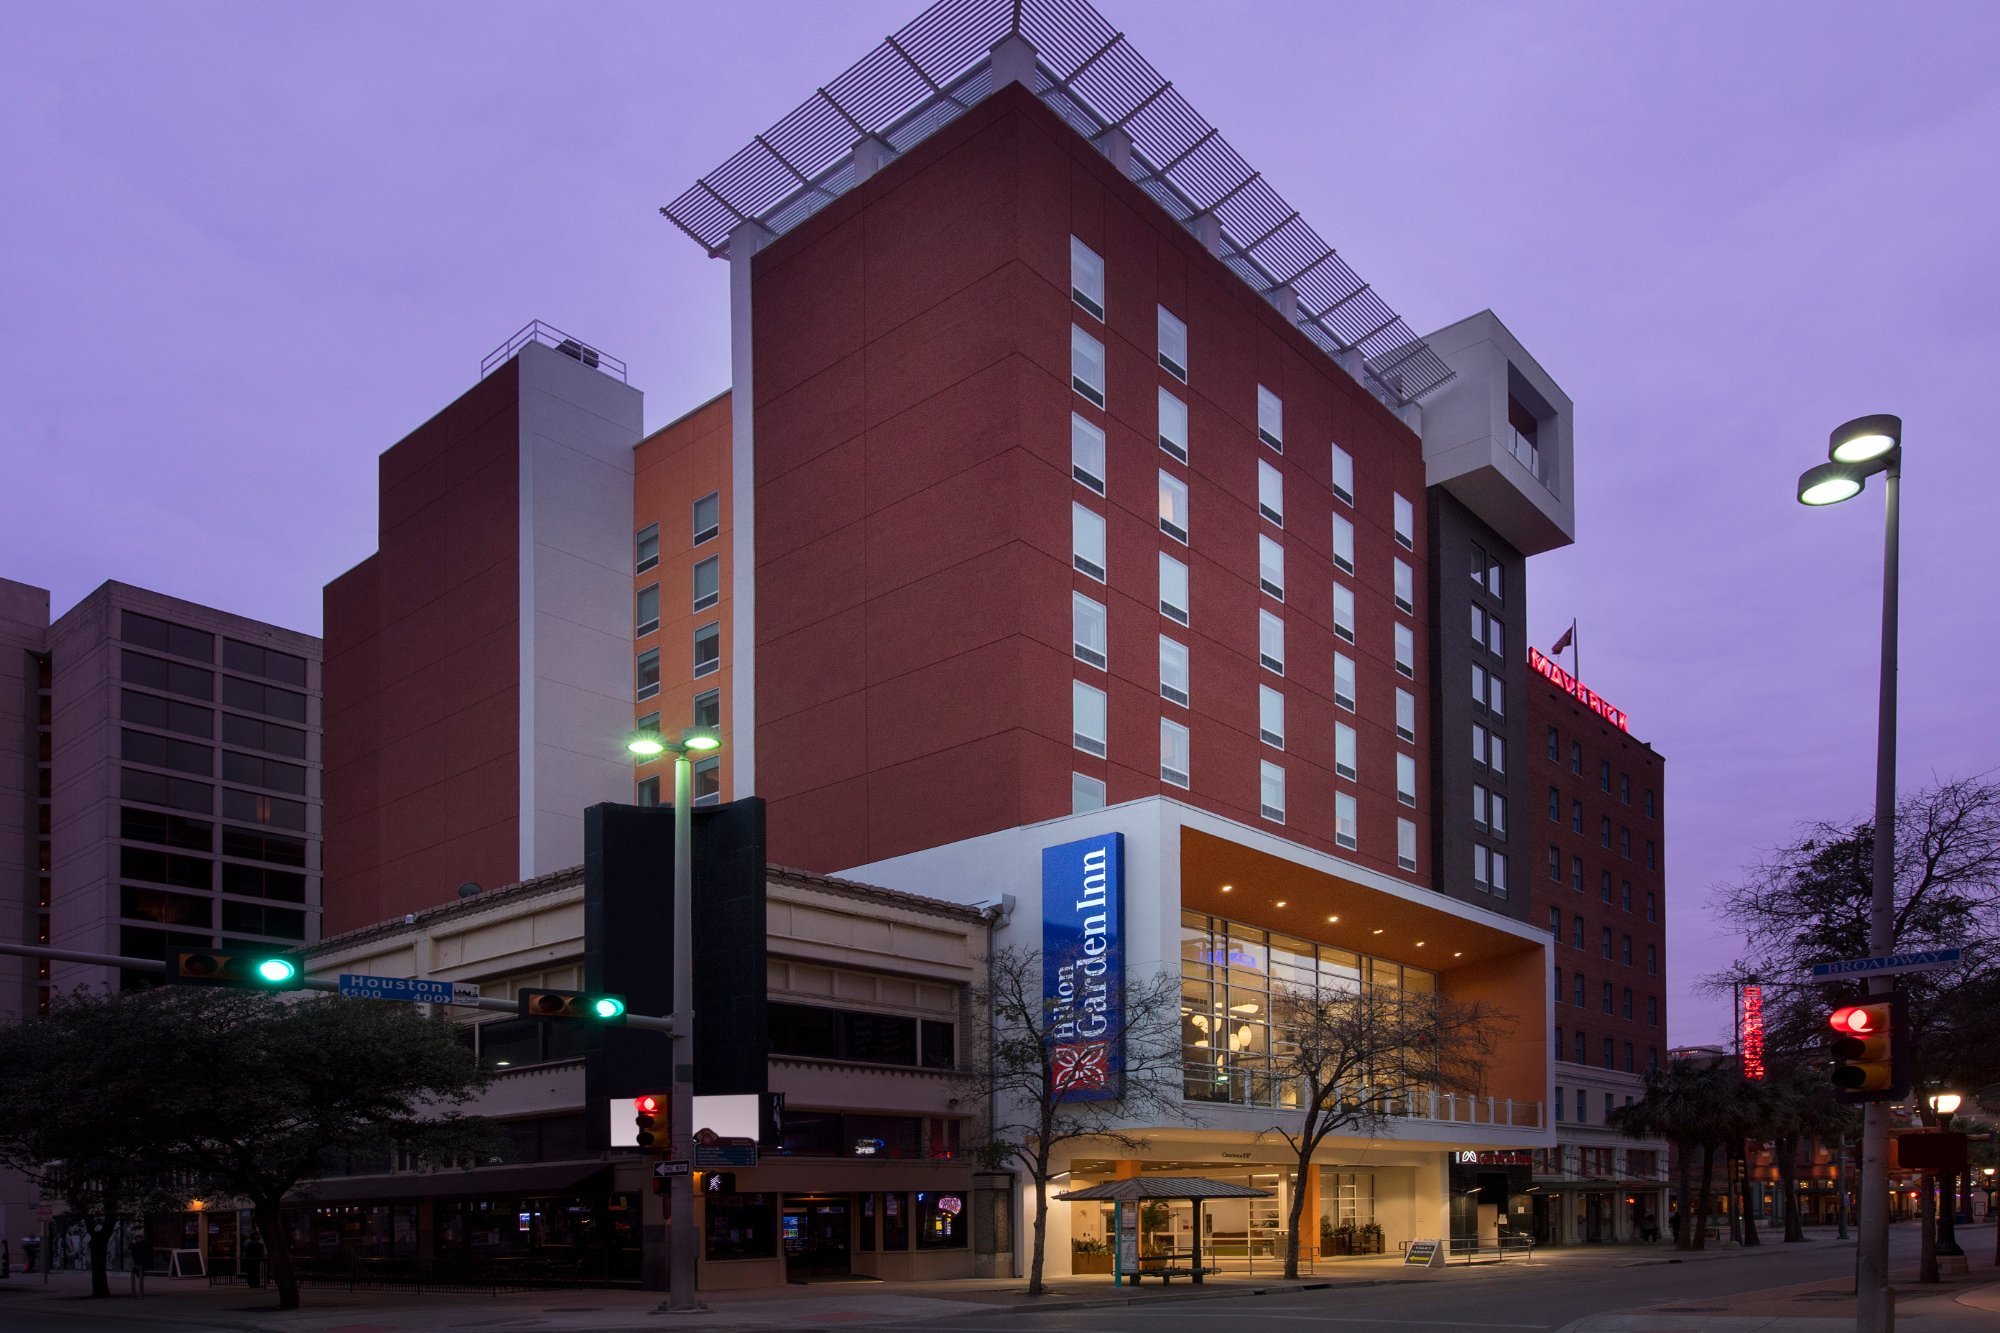 Photo of Hilton Garden Inn San Antonio Downtown, San Antonio, TX